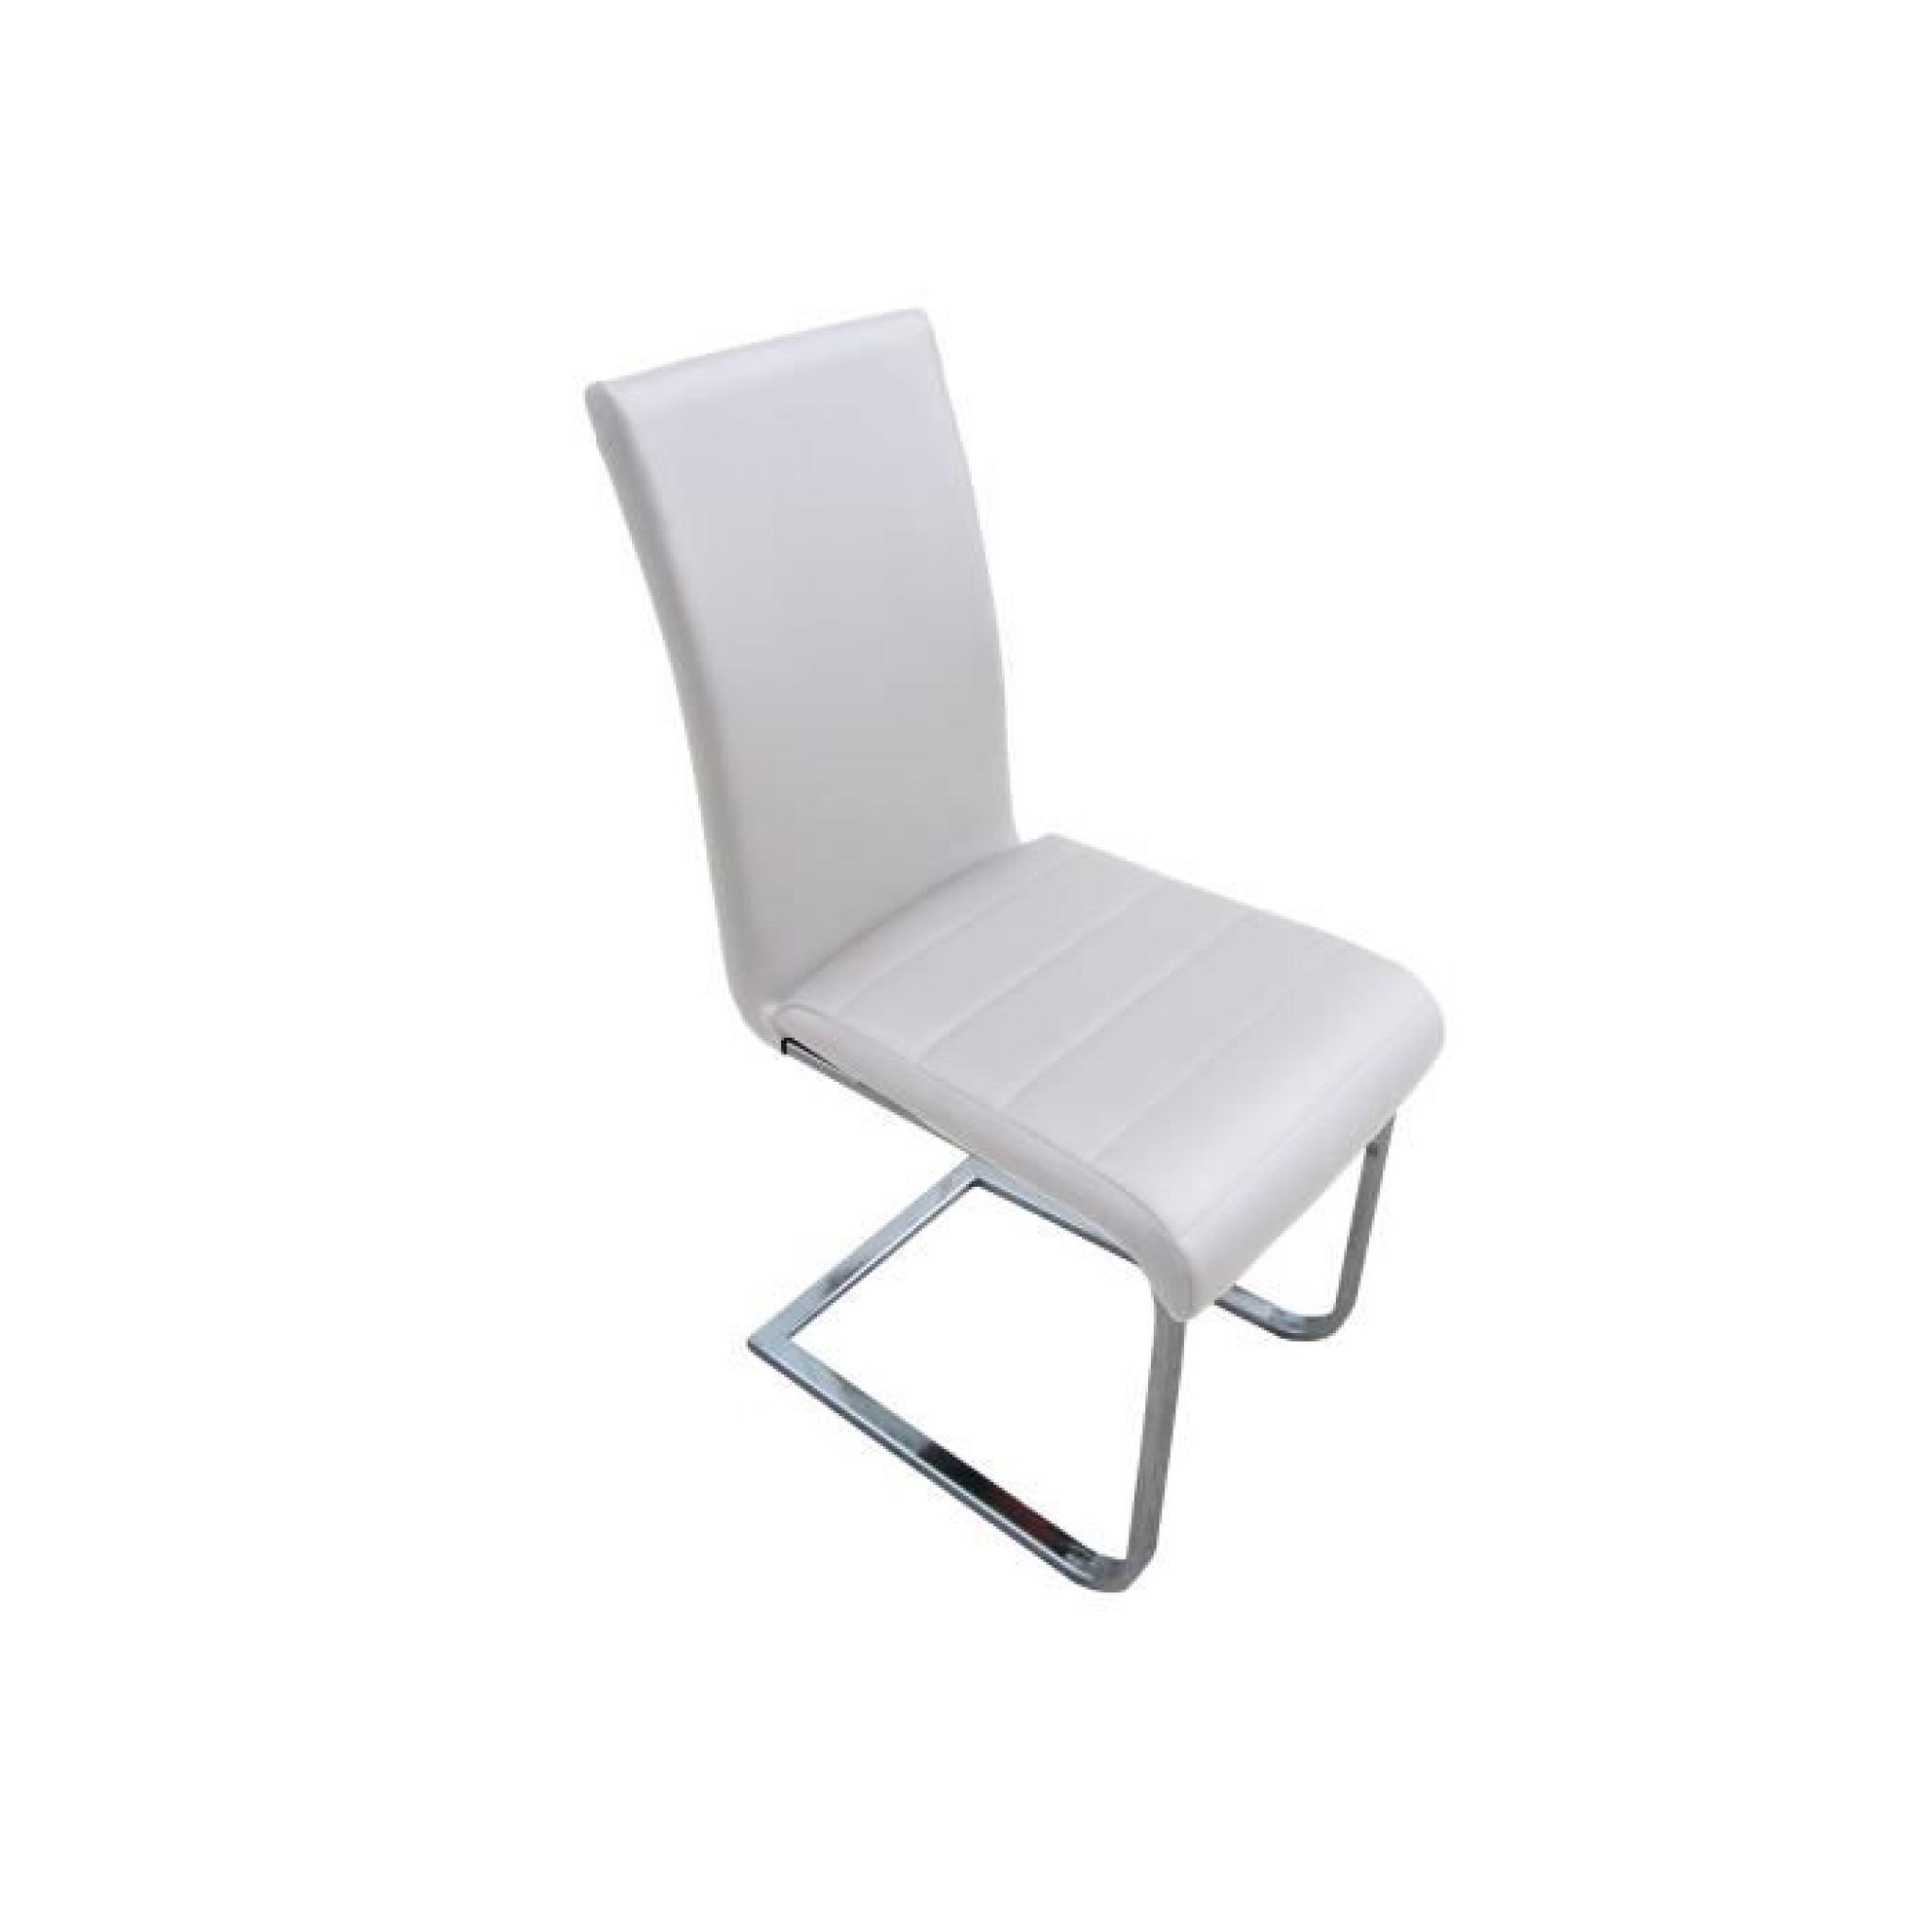 Lot de 4 chaises LUC blanc en simili cuir design